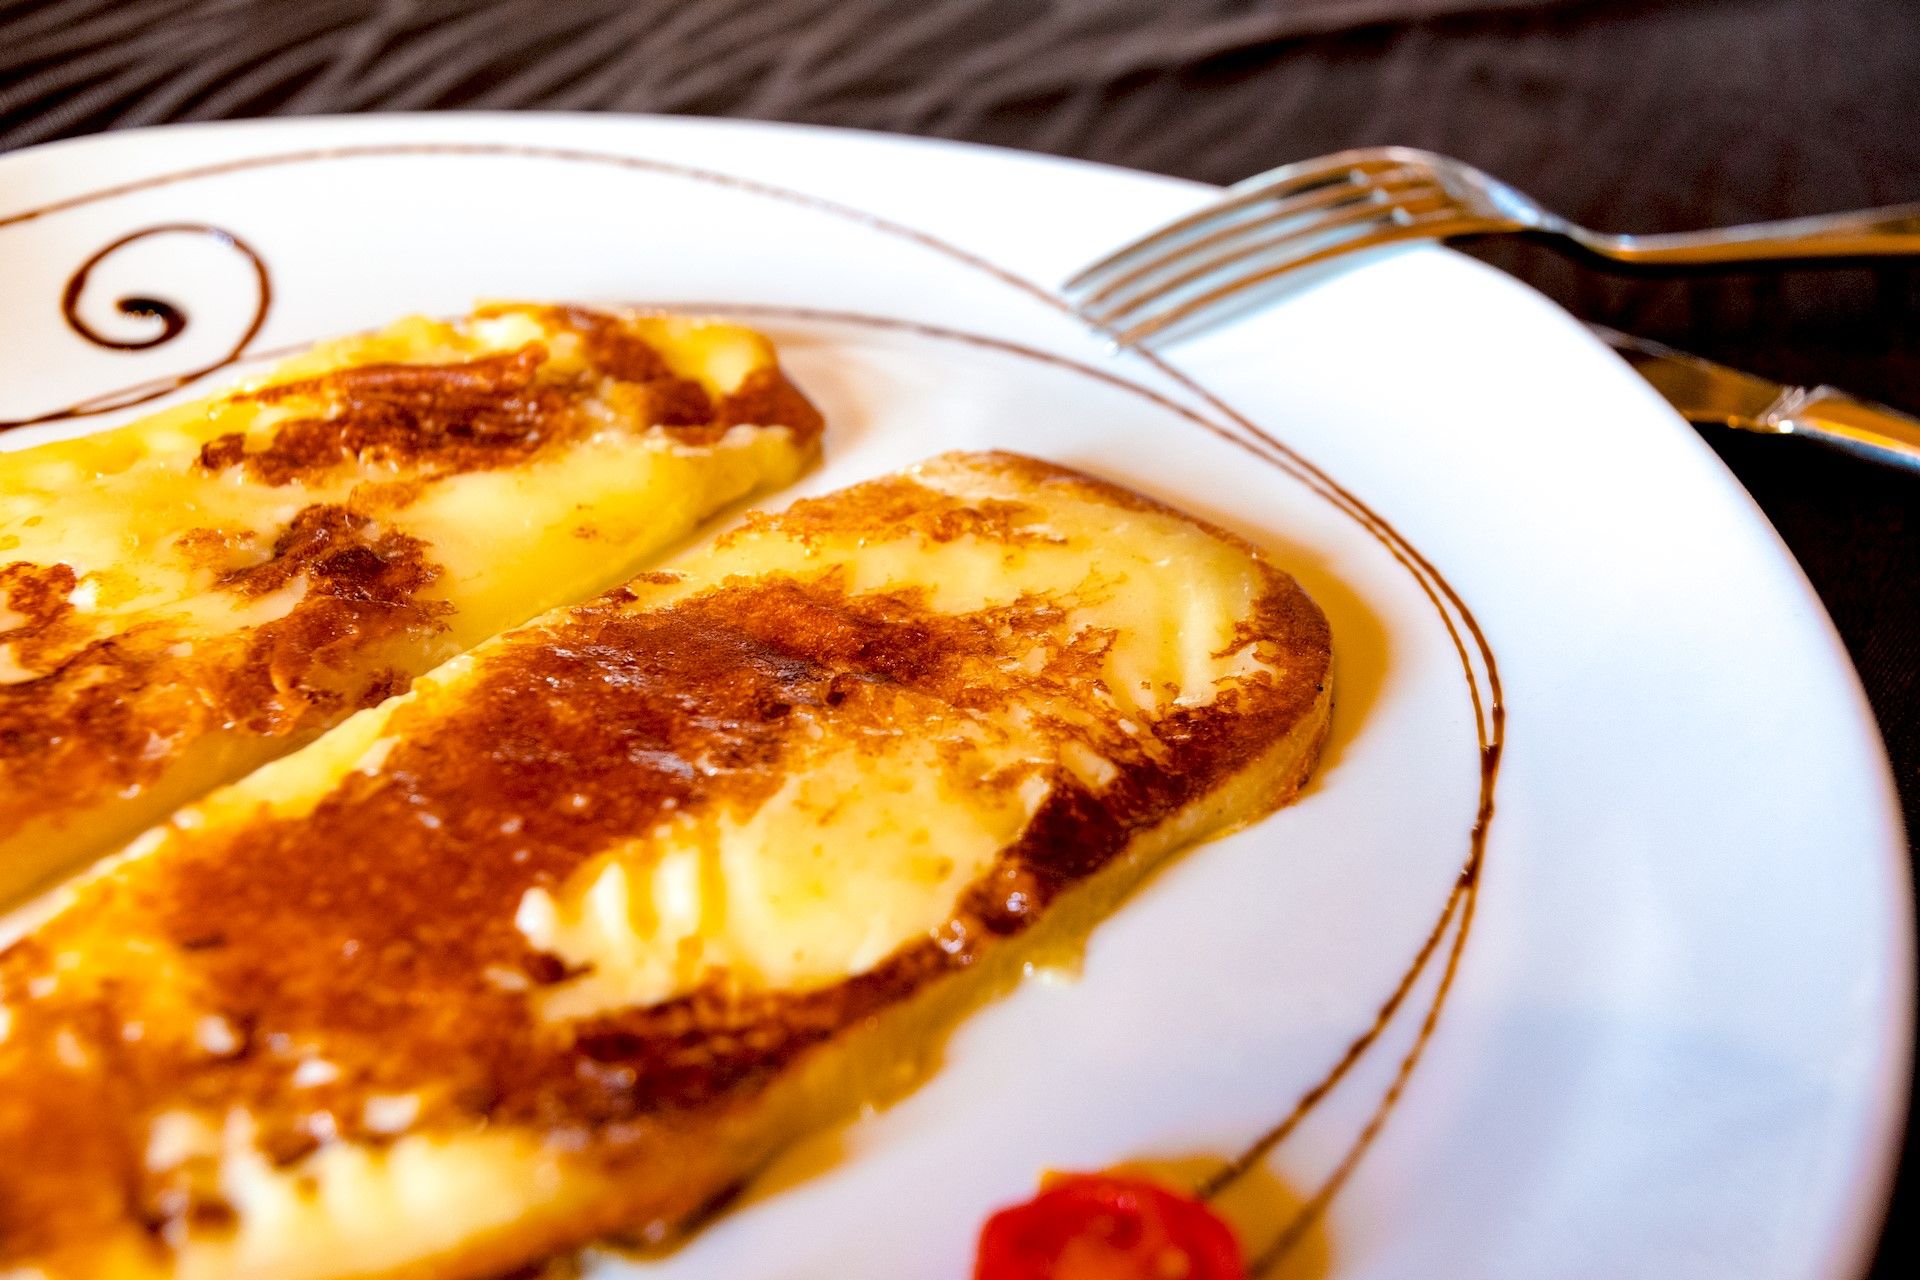 formaggio dorato sulla piastra del ristorante La Tacchinella cucina tipica teramana abruzzese a Canzano